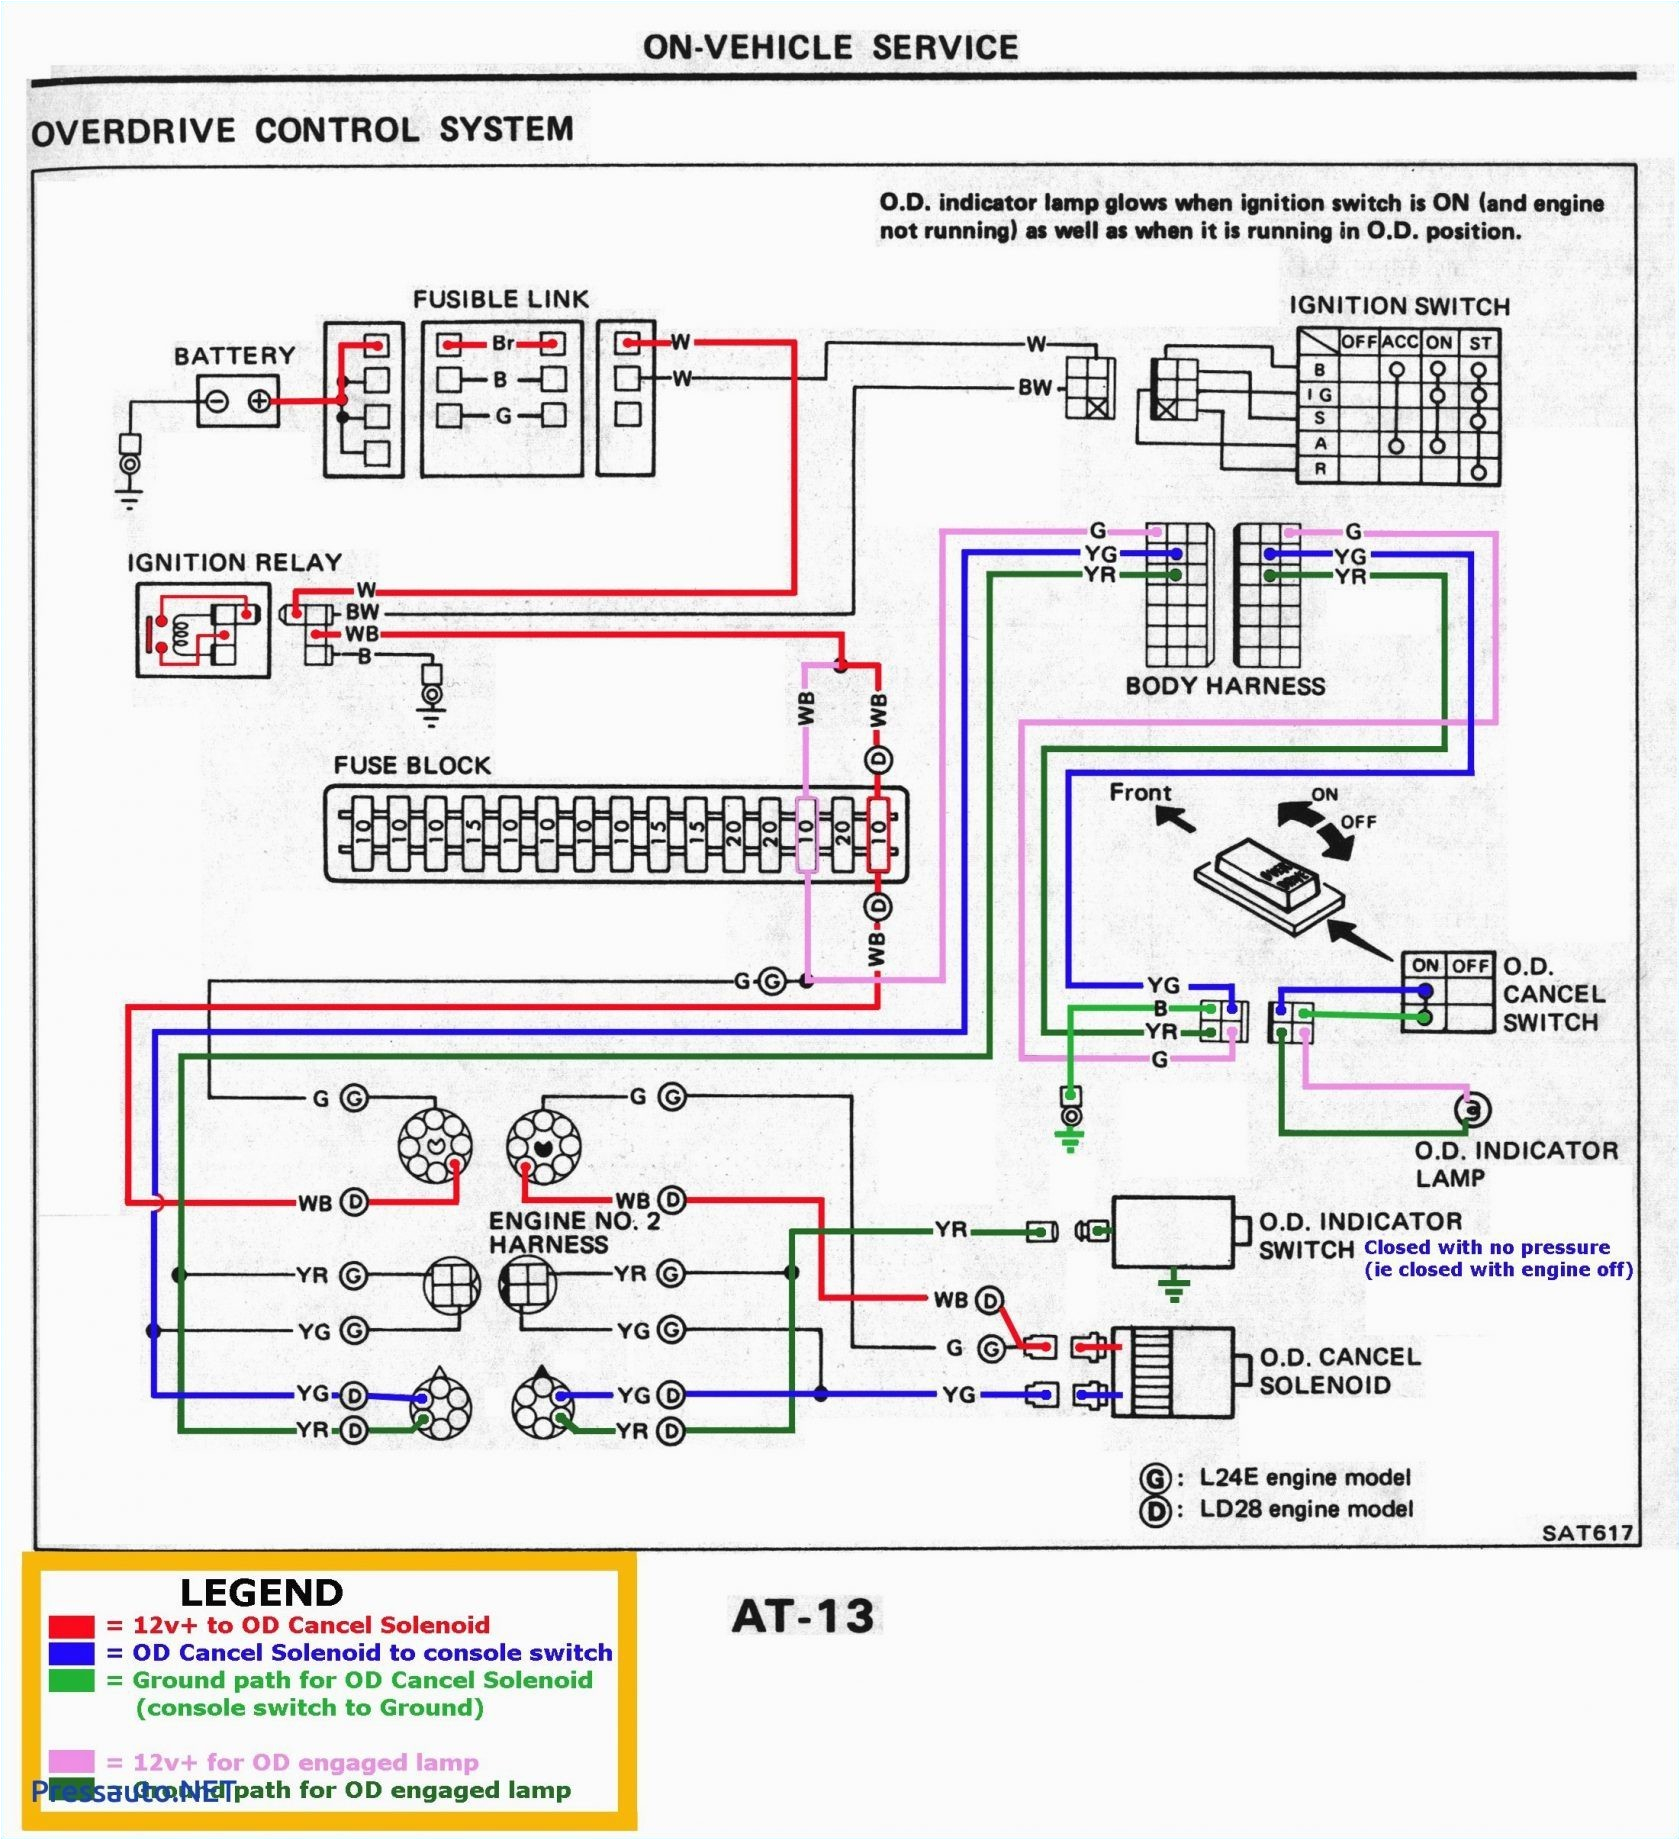 amc solenoid wiring diagram wiring diagram viewamc solenoid wiring diagram wiring diagram img amc solenoid wiring